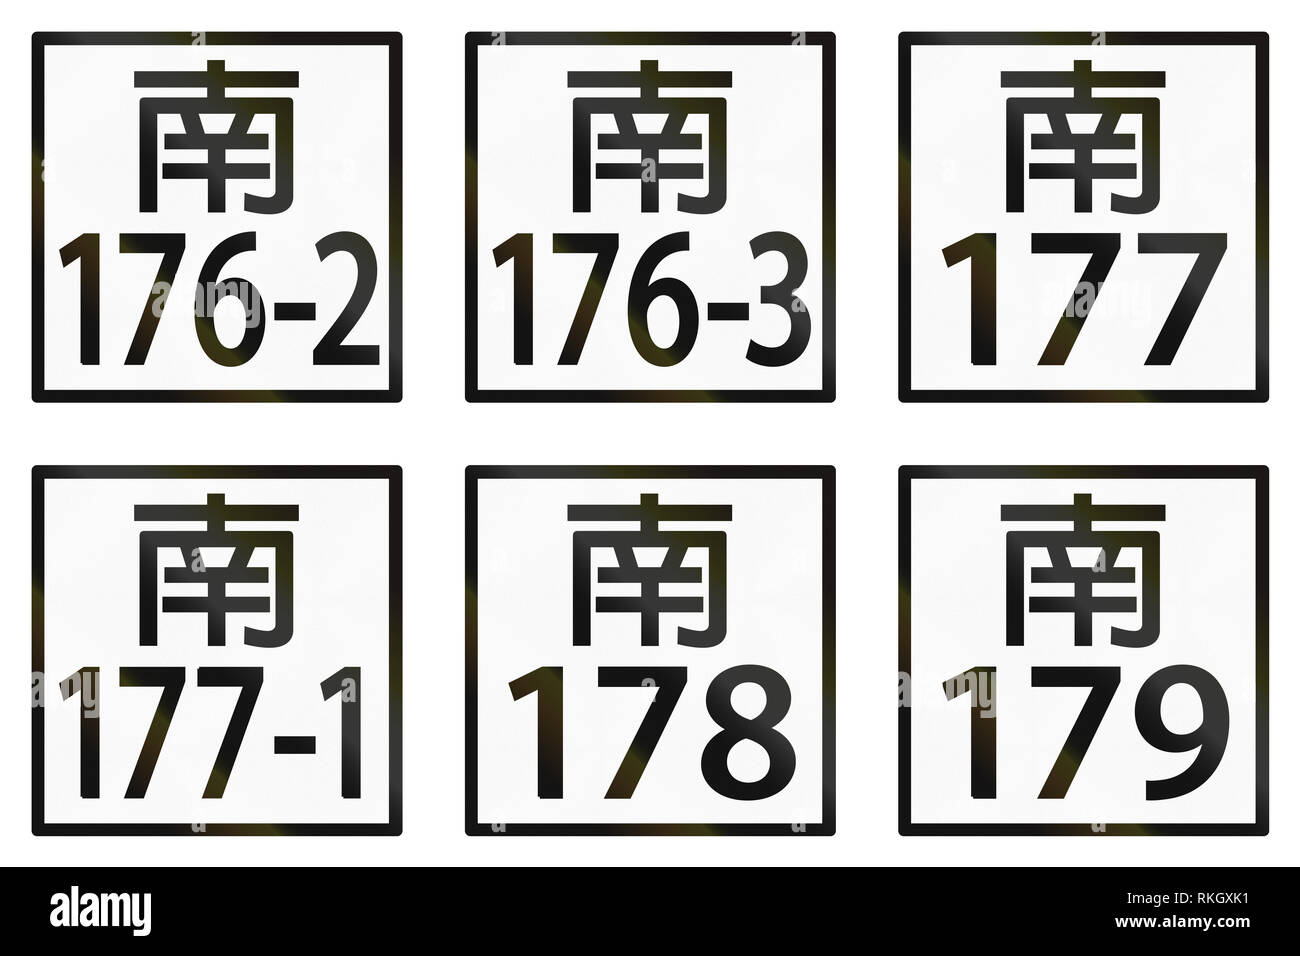 Collection de panneaux routiers canton local à Taiwan. Banque D'Images